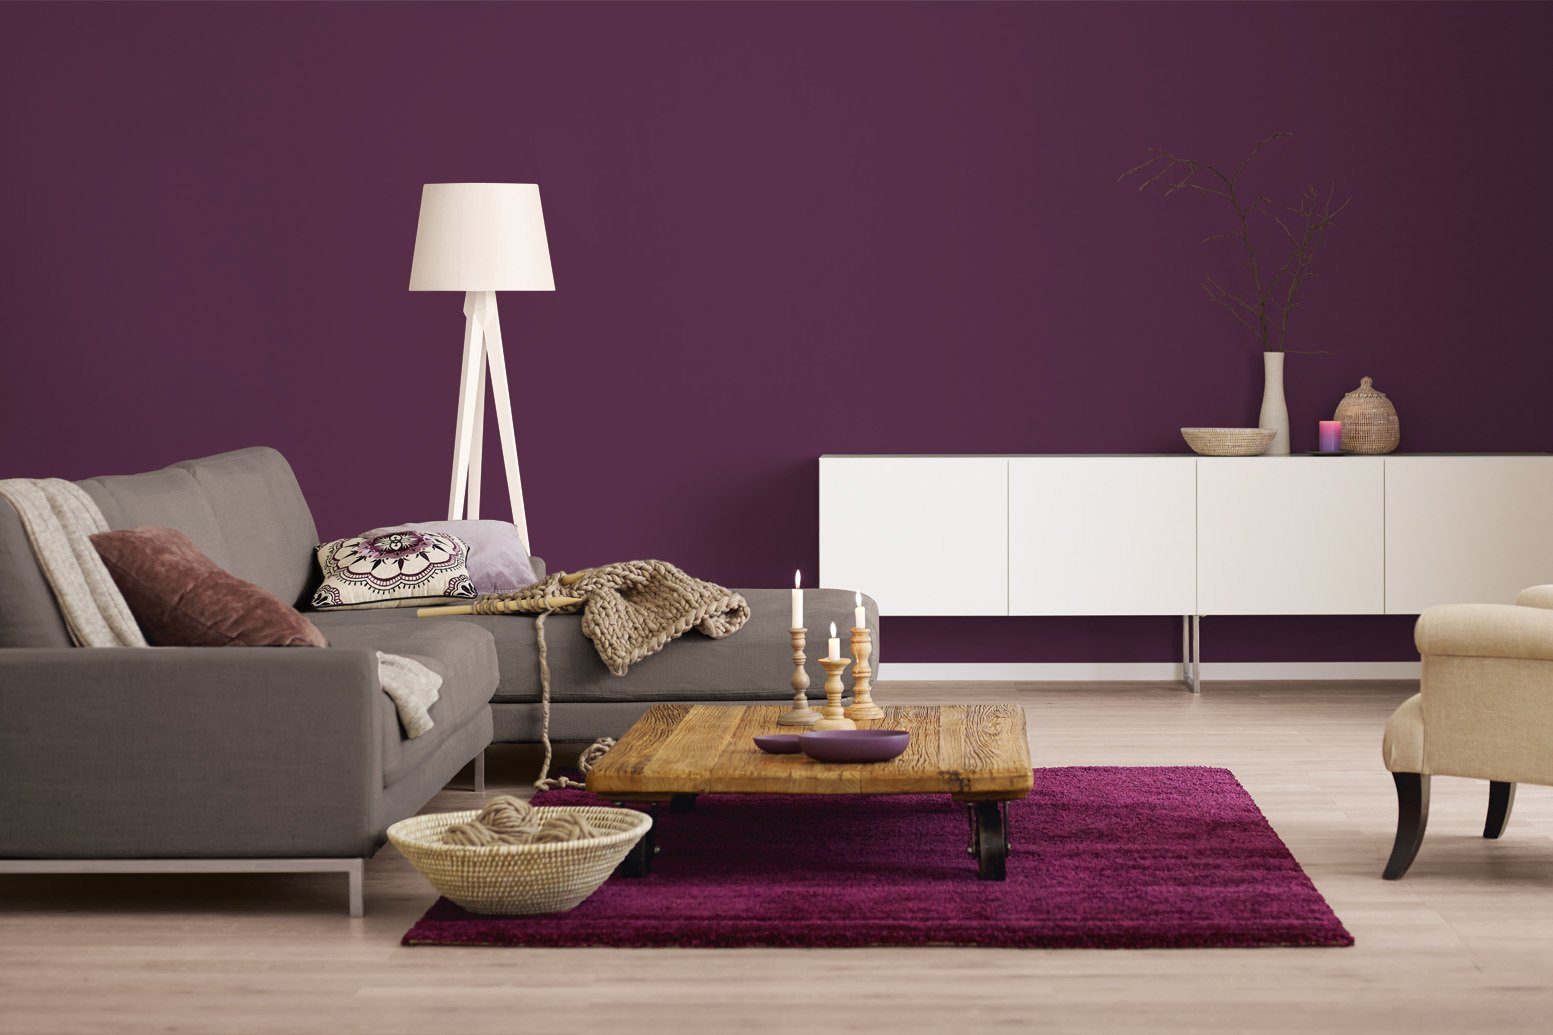 Alpina Wand- und Deckenfarbe Liter Violett, Intensives 2,5 Farbrezepte Traum, matt, Tiefer